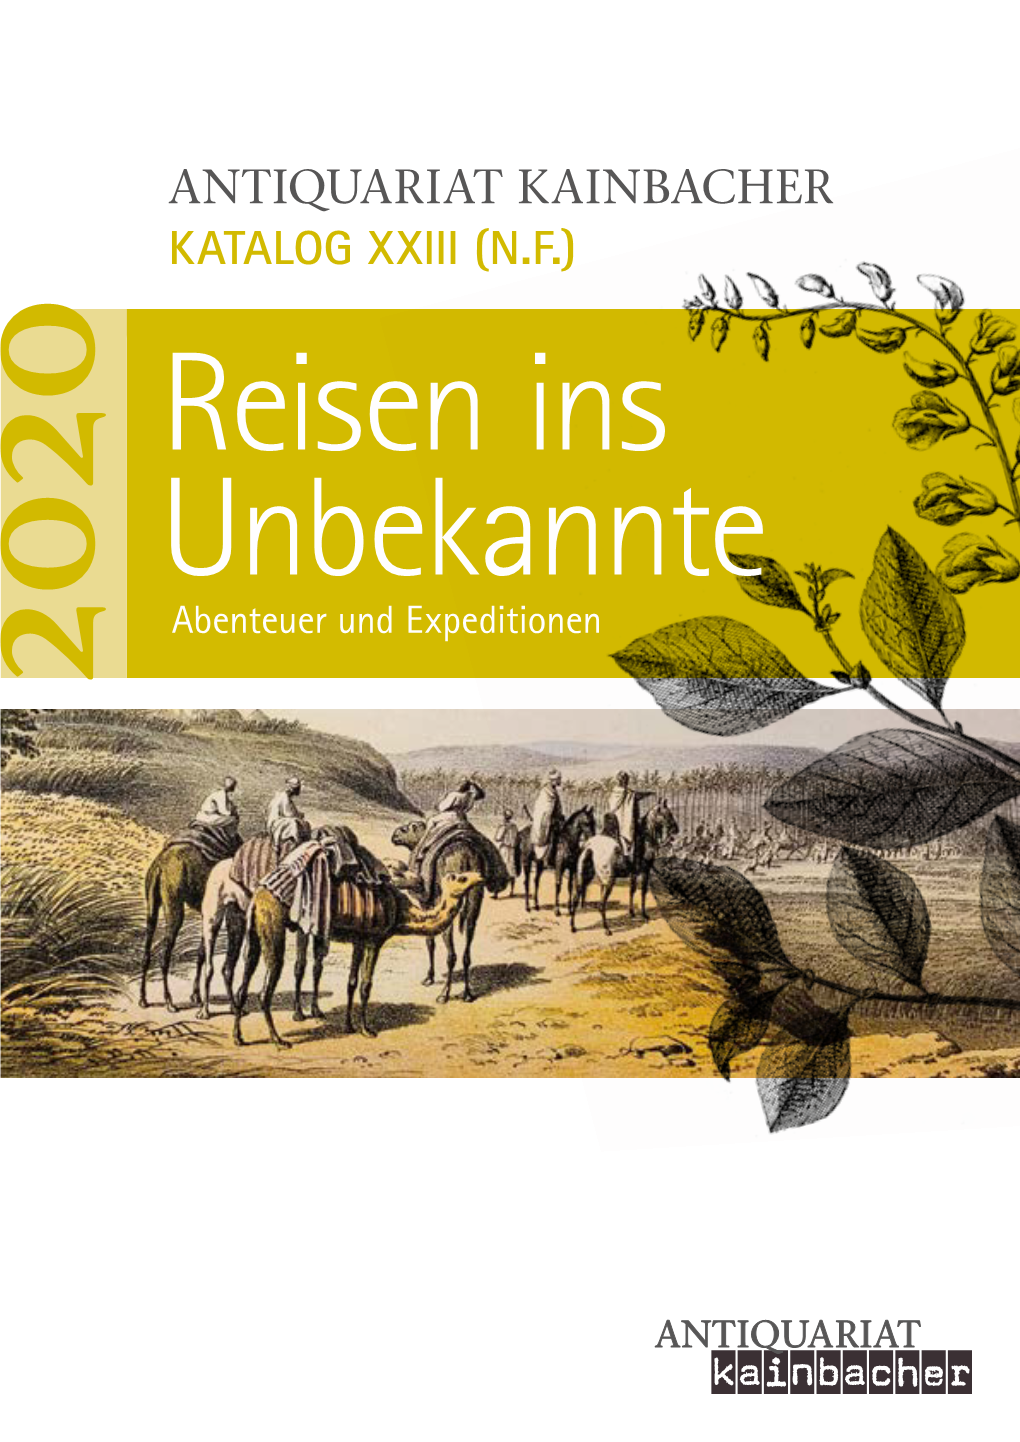 Antiquariat Kainbacher Katalog Xxiii (N.F.)